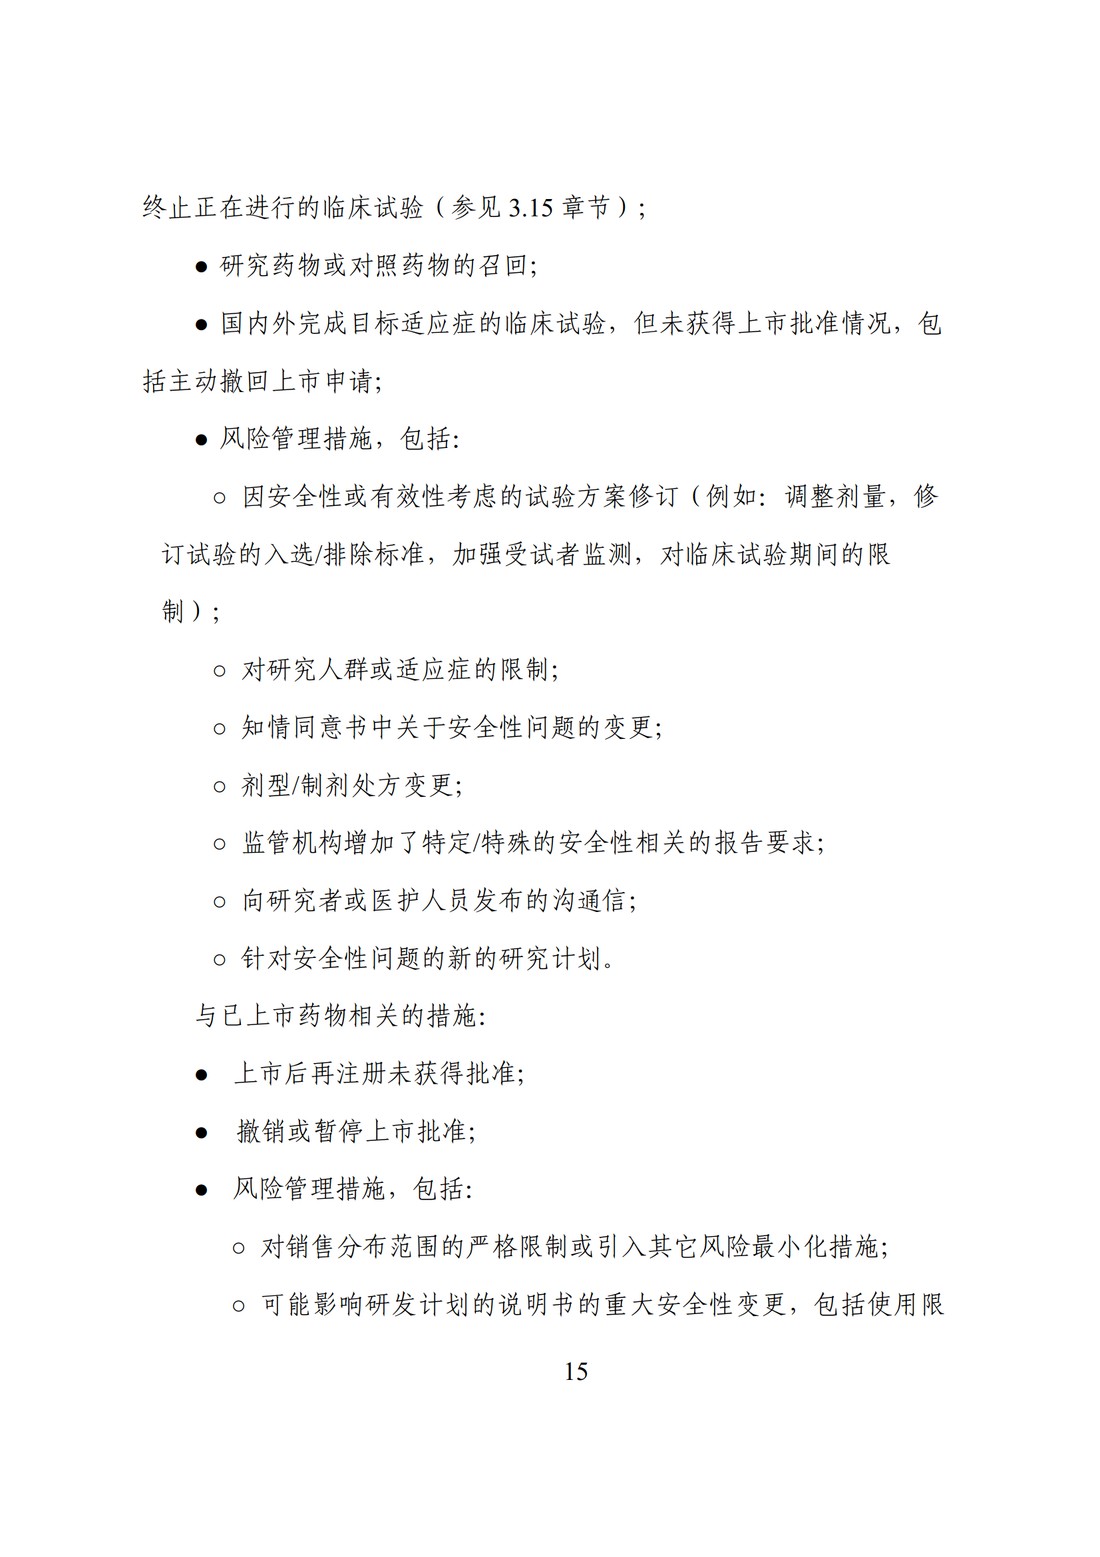 E2F 研发期间安全性更新报告(中文翻译公开征求意见稿)_20.jpg